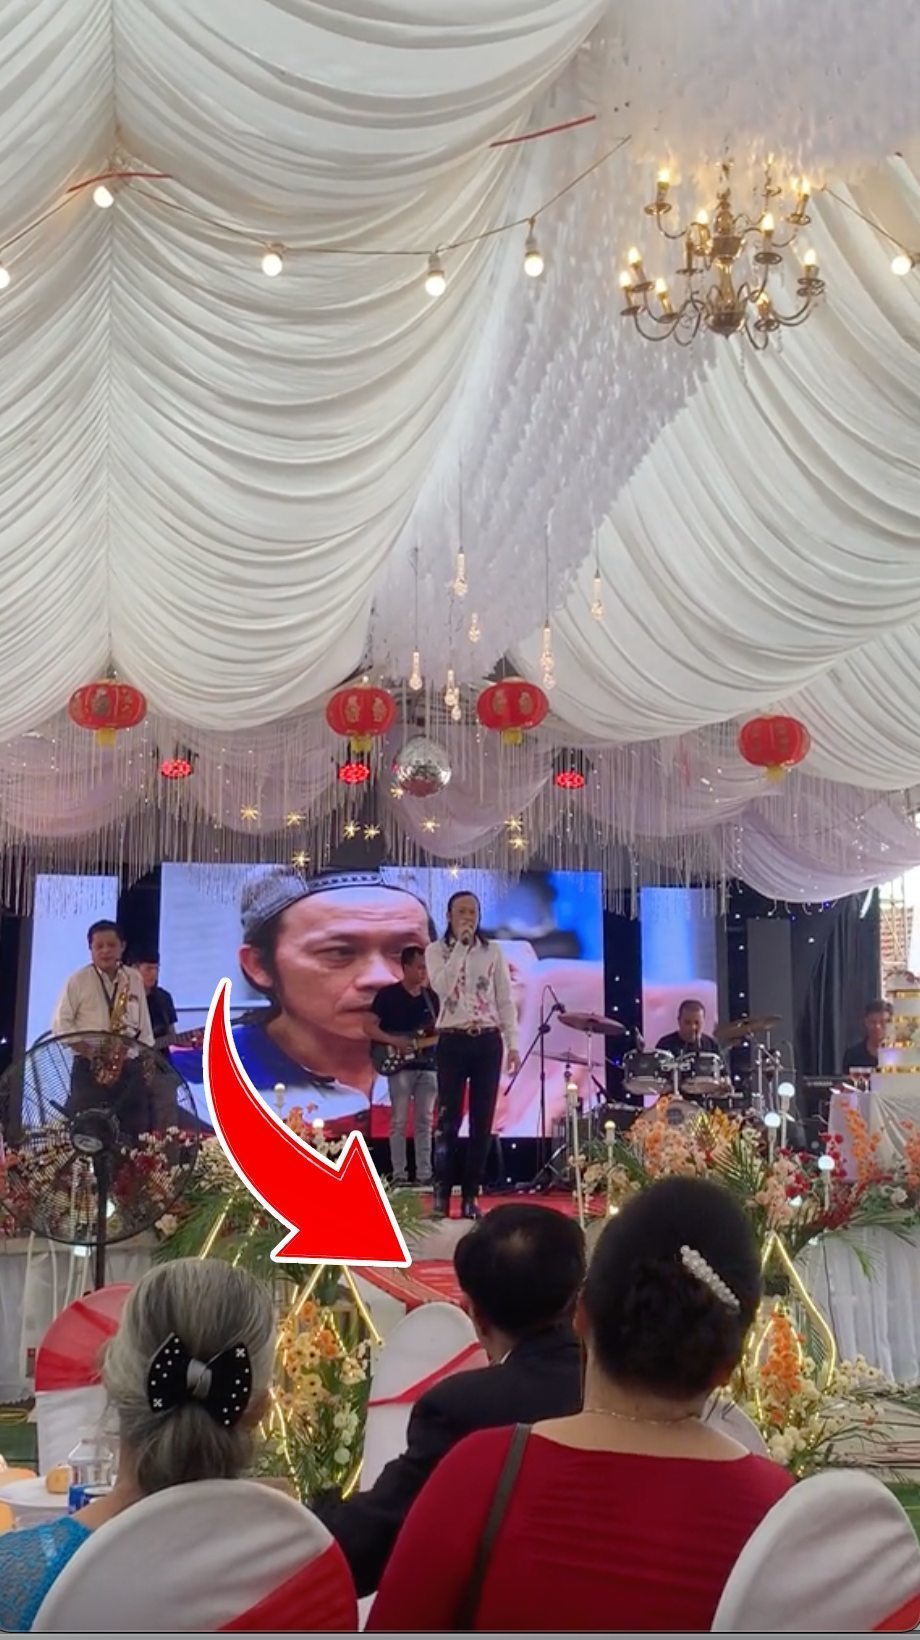  
Khi hát đám cưới Hoài Linh không được khán giả phản ứng nhiệt tình. (Ảnh: TikTok @khanhnguyen98) - Tin sao Viet - Tin tuc sao Viet - Scandal sao Viet - Tin tuc cua Sao - Tin cua Sao